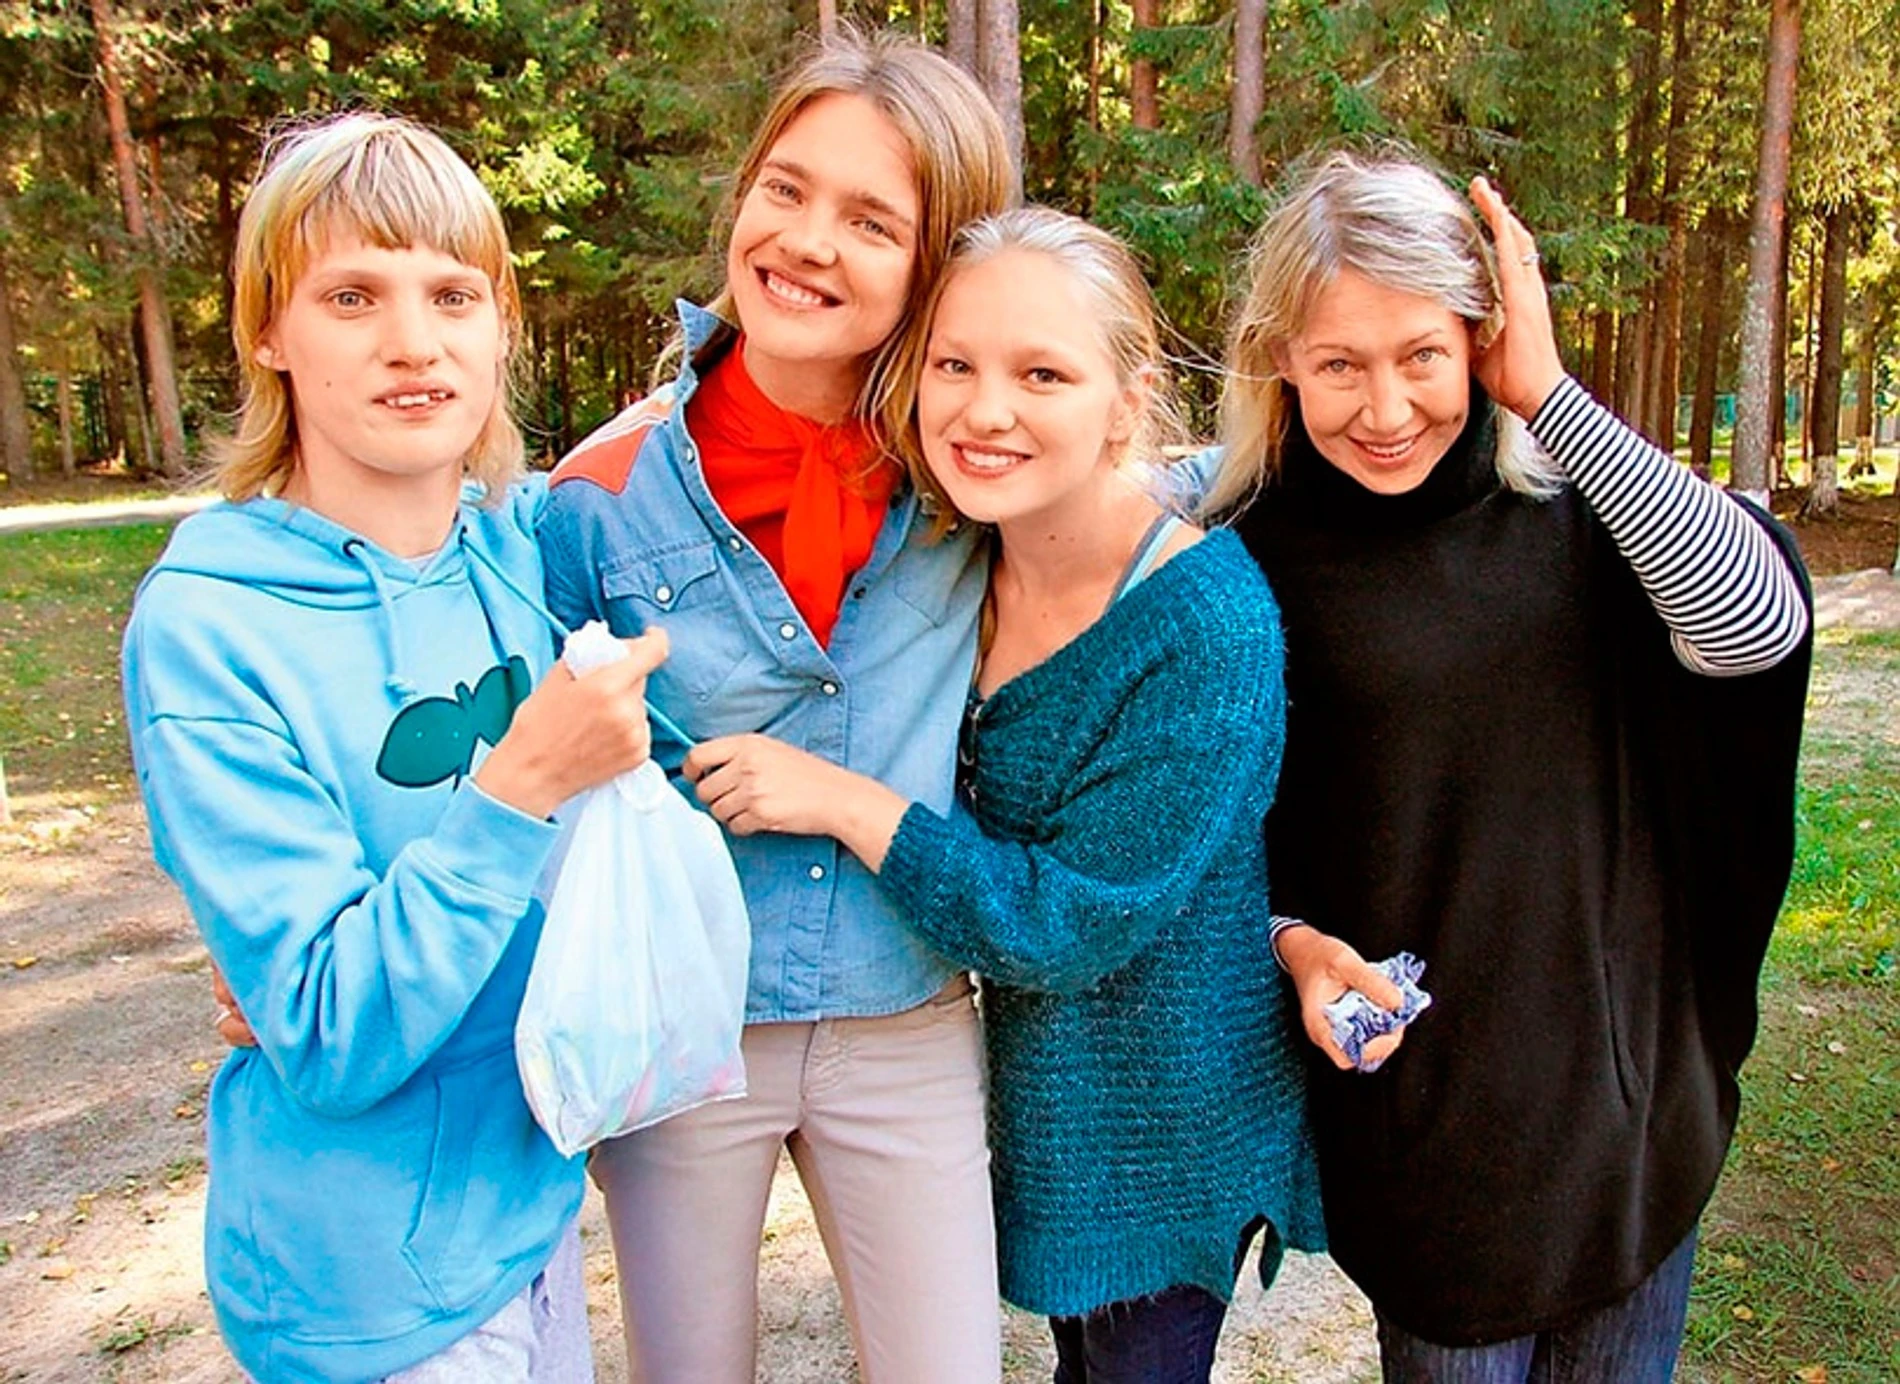 Наталья Водянова с сестрами и мамой 
Фото: соцсети